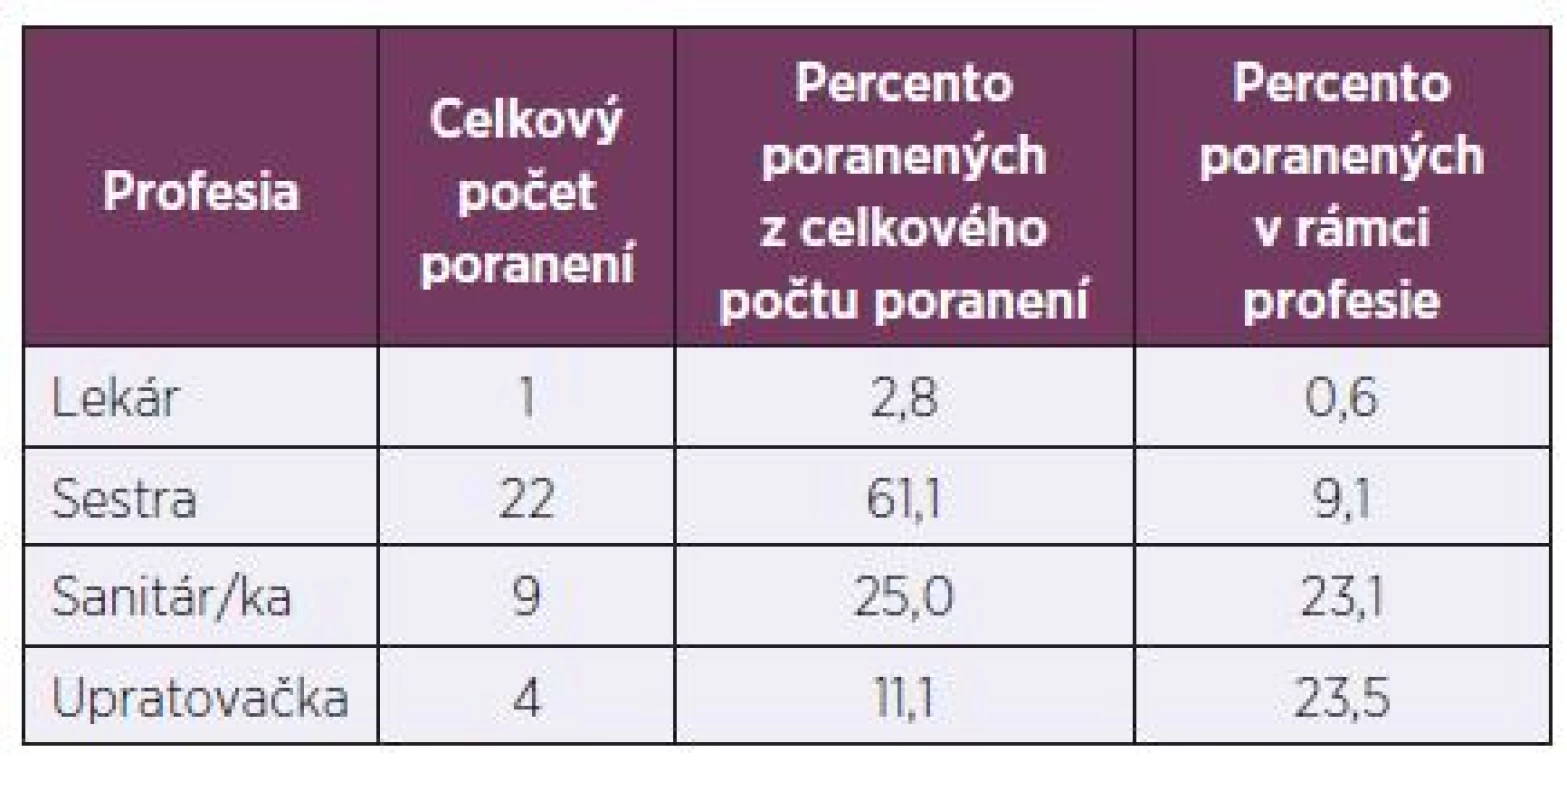 Počet poranení v spoločnosti FMC – dialyzačné služby, s. r. o., podľa profesie